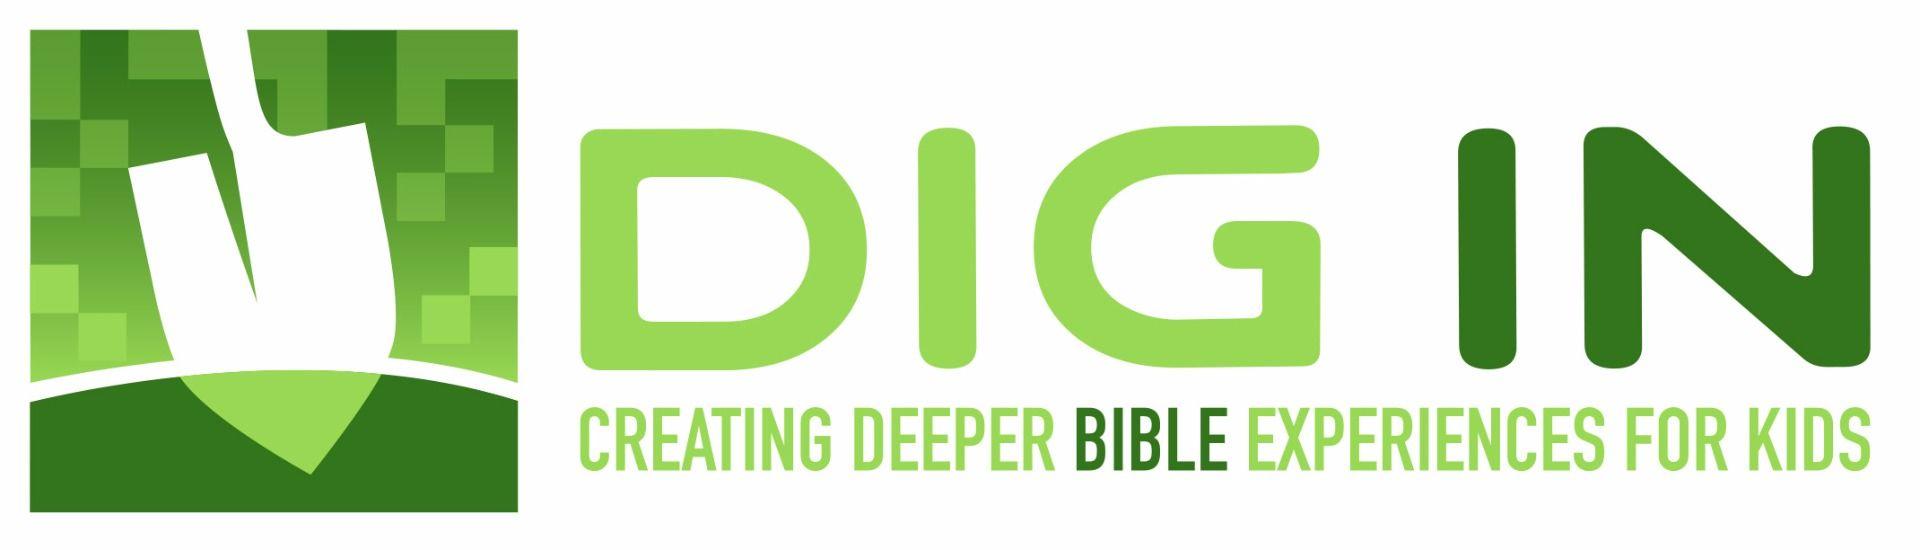 Dig Logo - Downloadable Logo Artwork